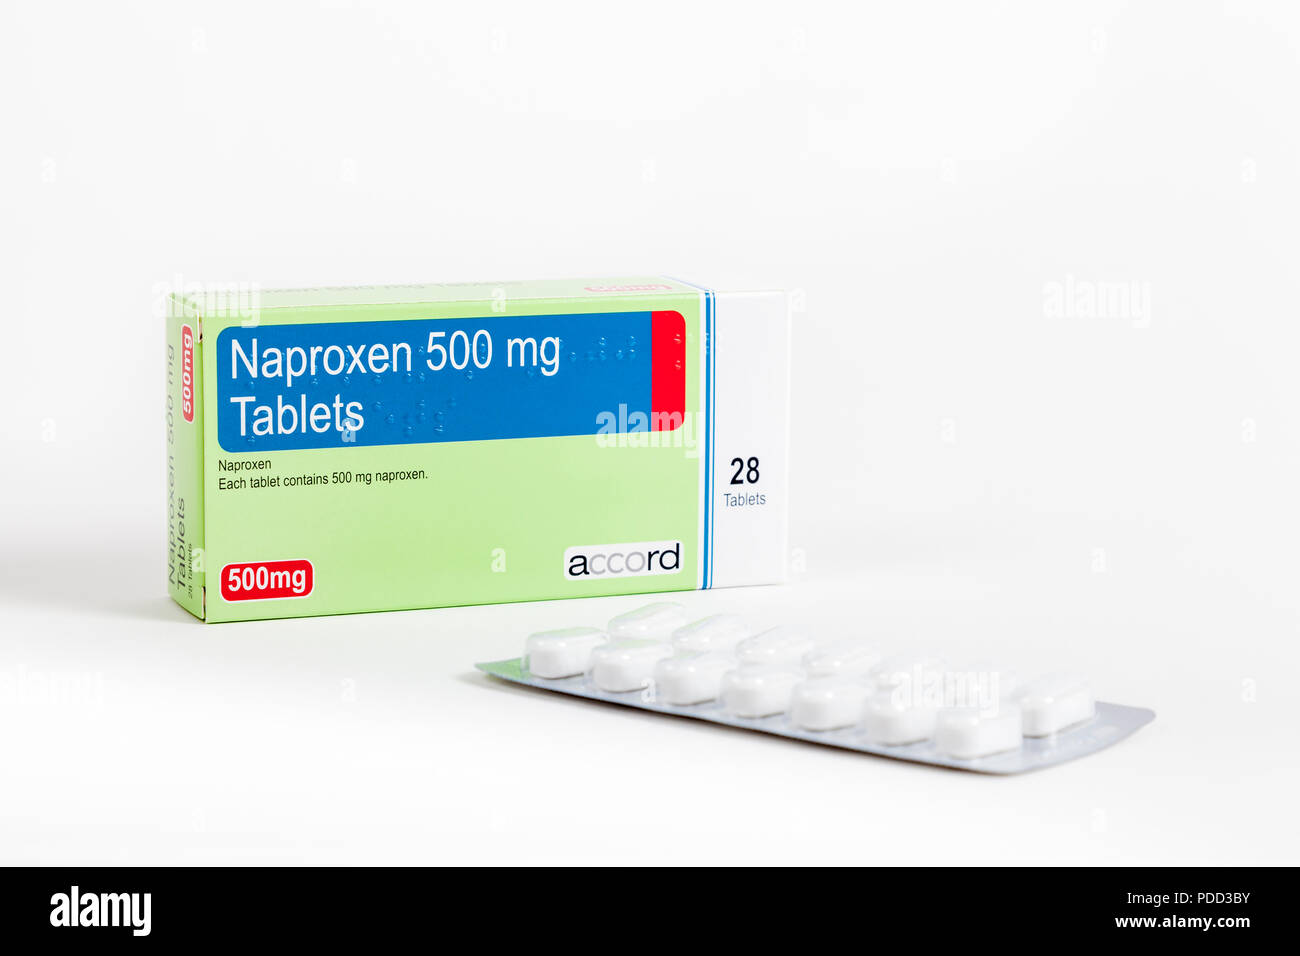 Scatola da 28 Naproxen 500mg compresse ottenute mediante accordo. Un antinfiammatorio non steroideo (FANS) farmaco per alleviare il dolore e la riduzione dell'infiammazione Foto Stock